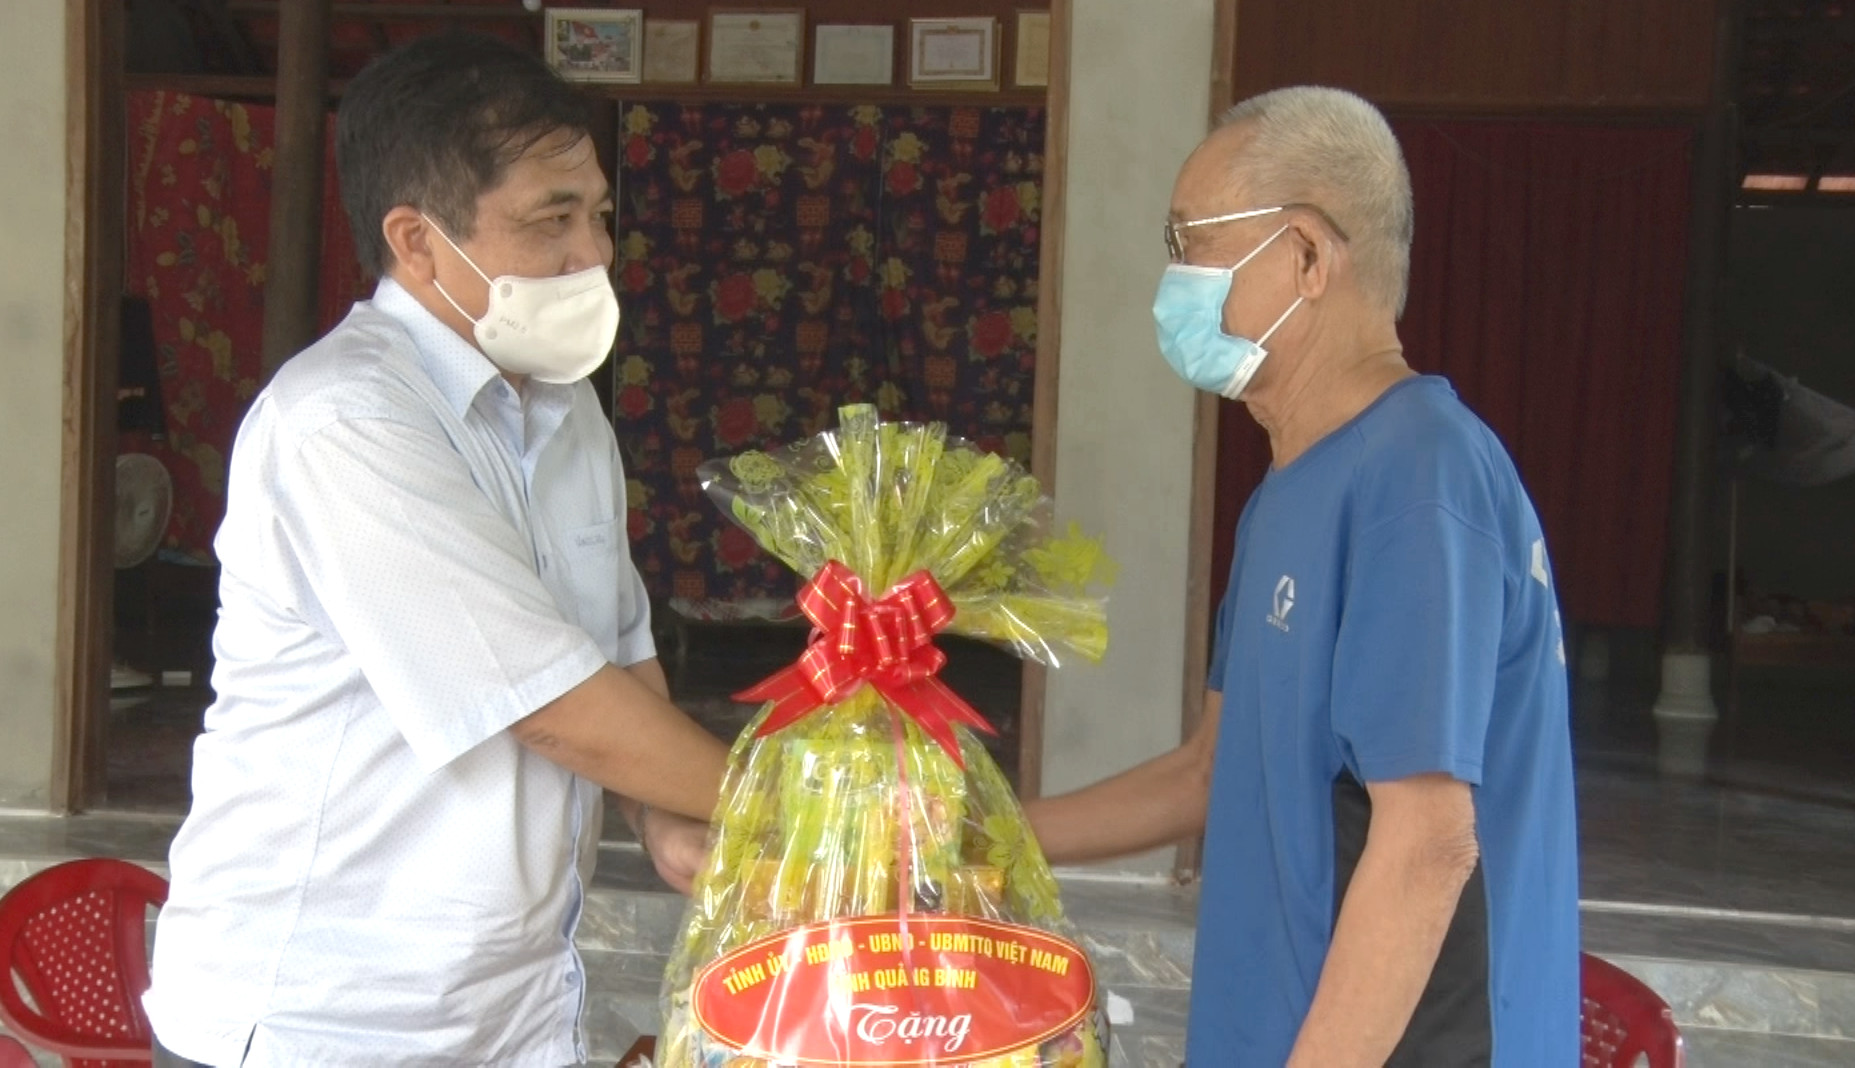 Đồng chí Đoàn Ngọc Lâm, Ủy viên Ban Thường vụ Tỉnh ủy, Phó Chủ tịch Thường trực UBND tỉnh thăm, tặng quà thương binh Đinh Minh Dương.